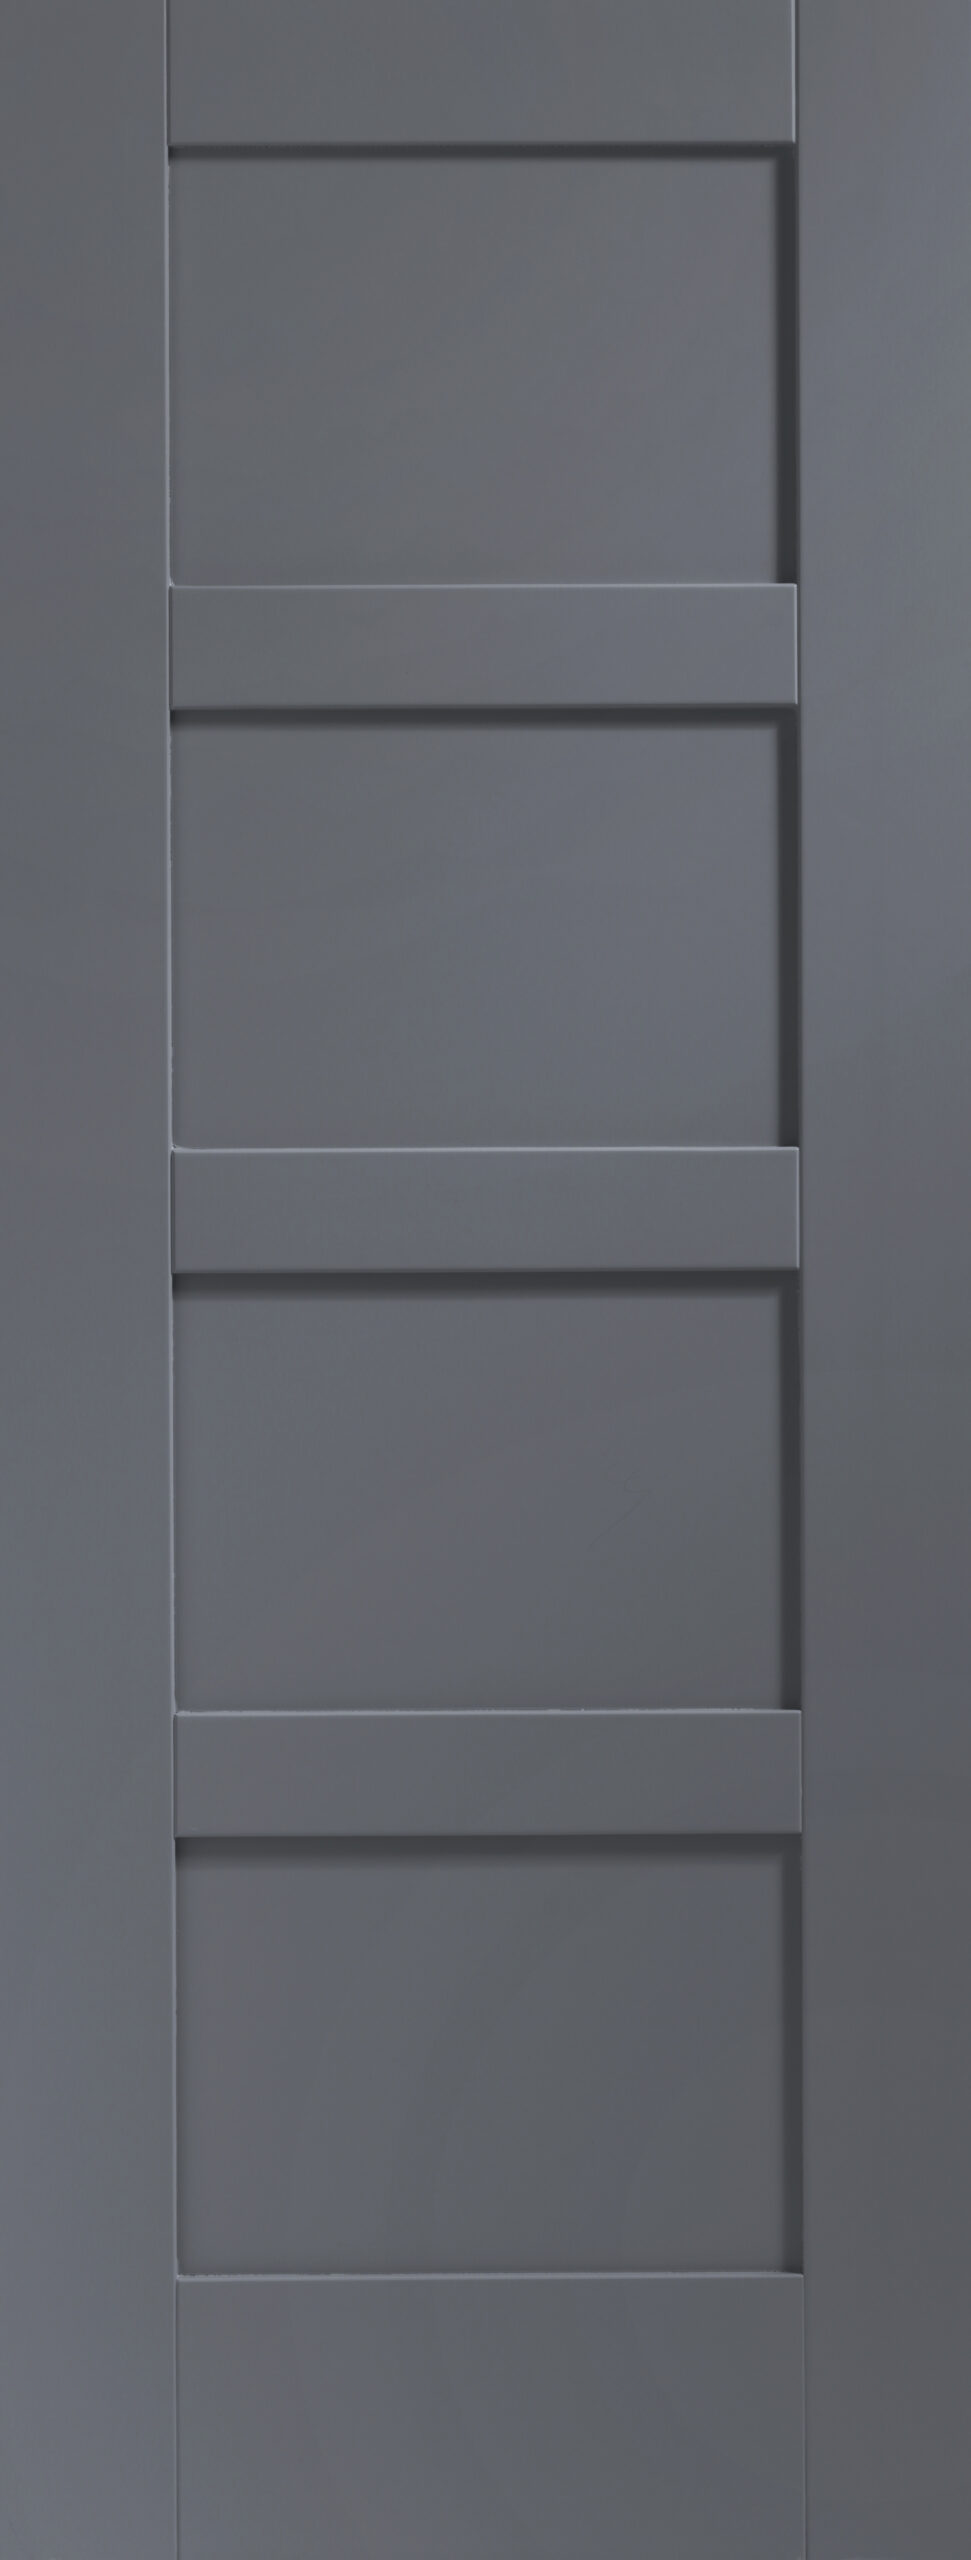 Shaker 4 Panel Internal White Primed Door – Cinder, 1981 x 838 x 35 mm